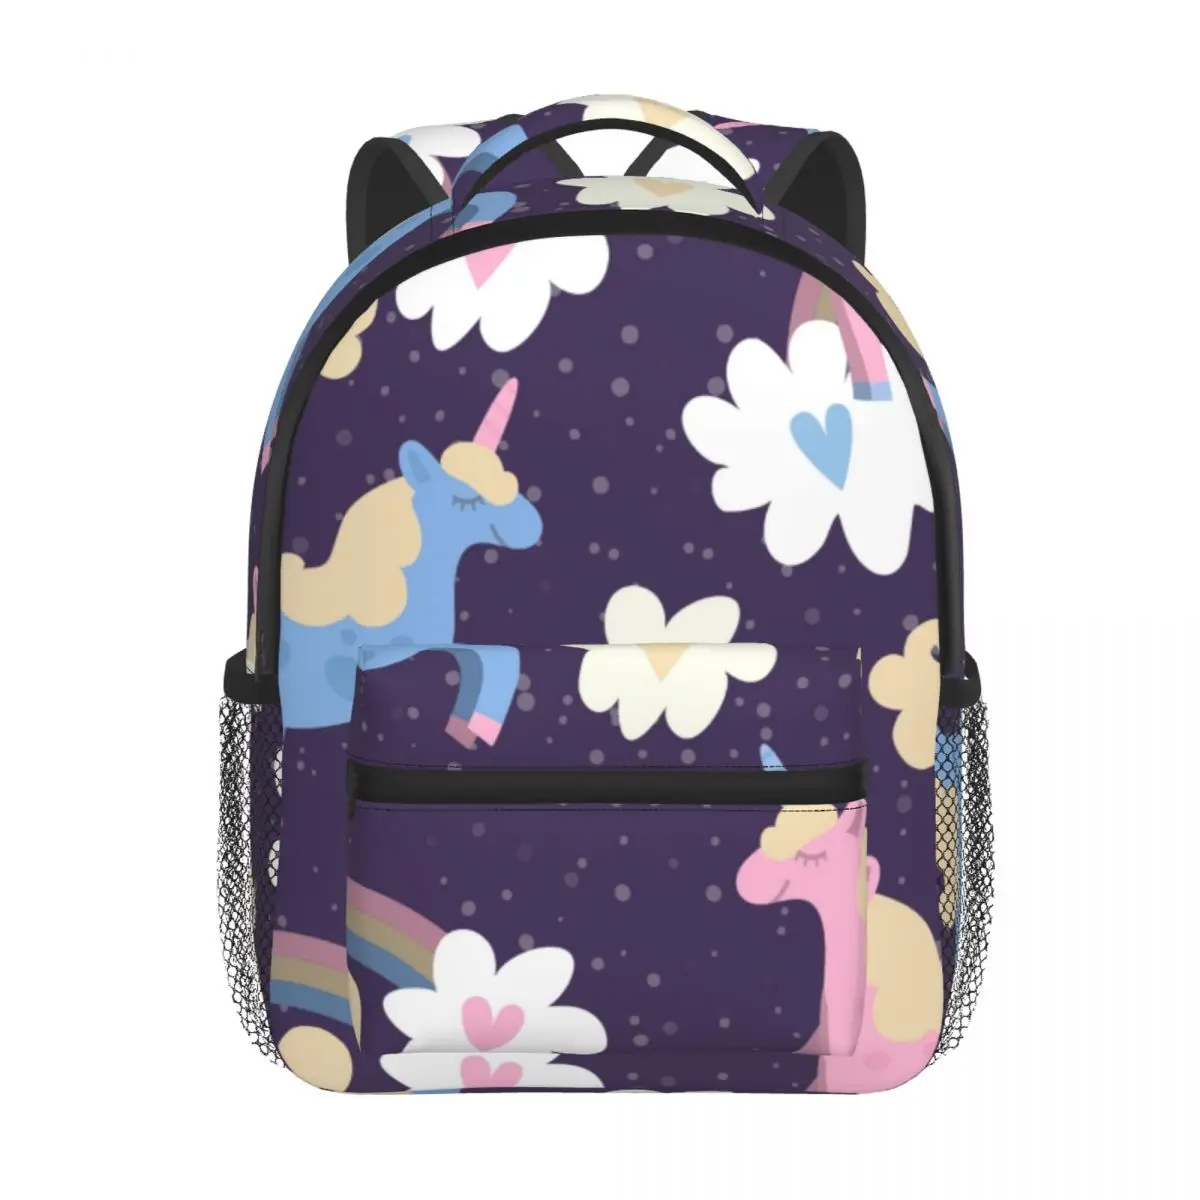 Pink Unicorn With Rainbow And Clouds Baby Backpack Kindergarten Schoolbag Kids Children School Bag